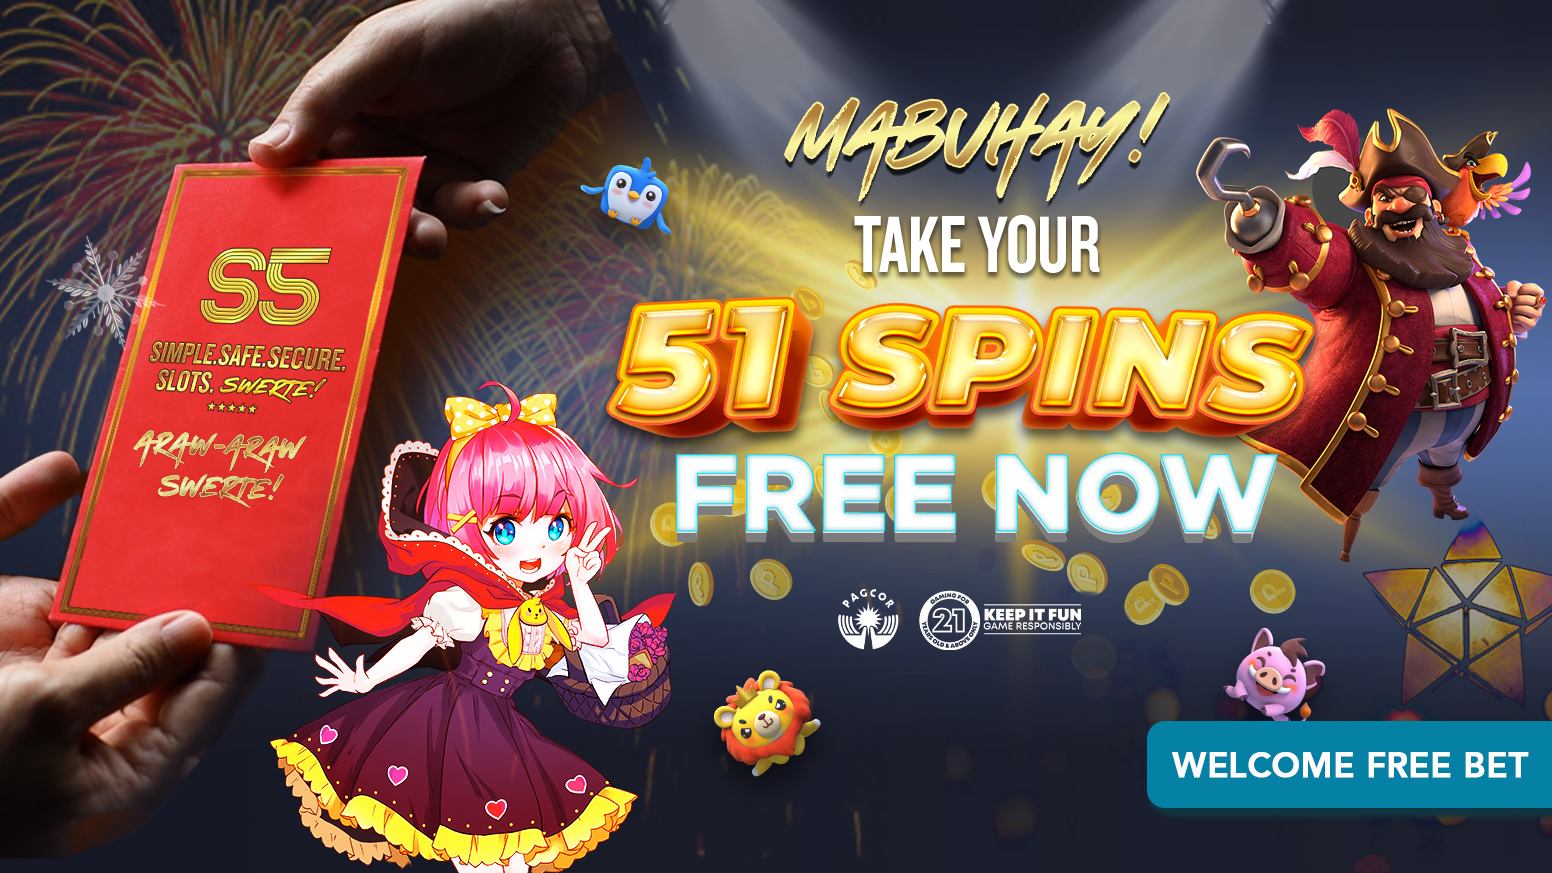 Maagang Pamasko Ng S5!   Sign Up And Get 51 Free Spins  SWERTE ka today!